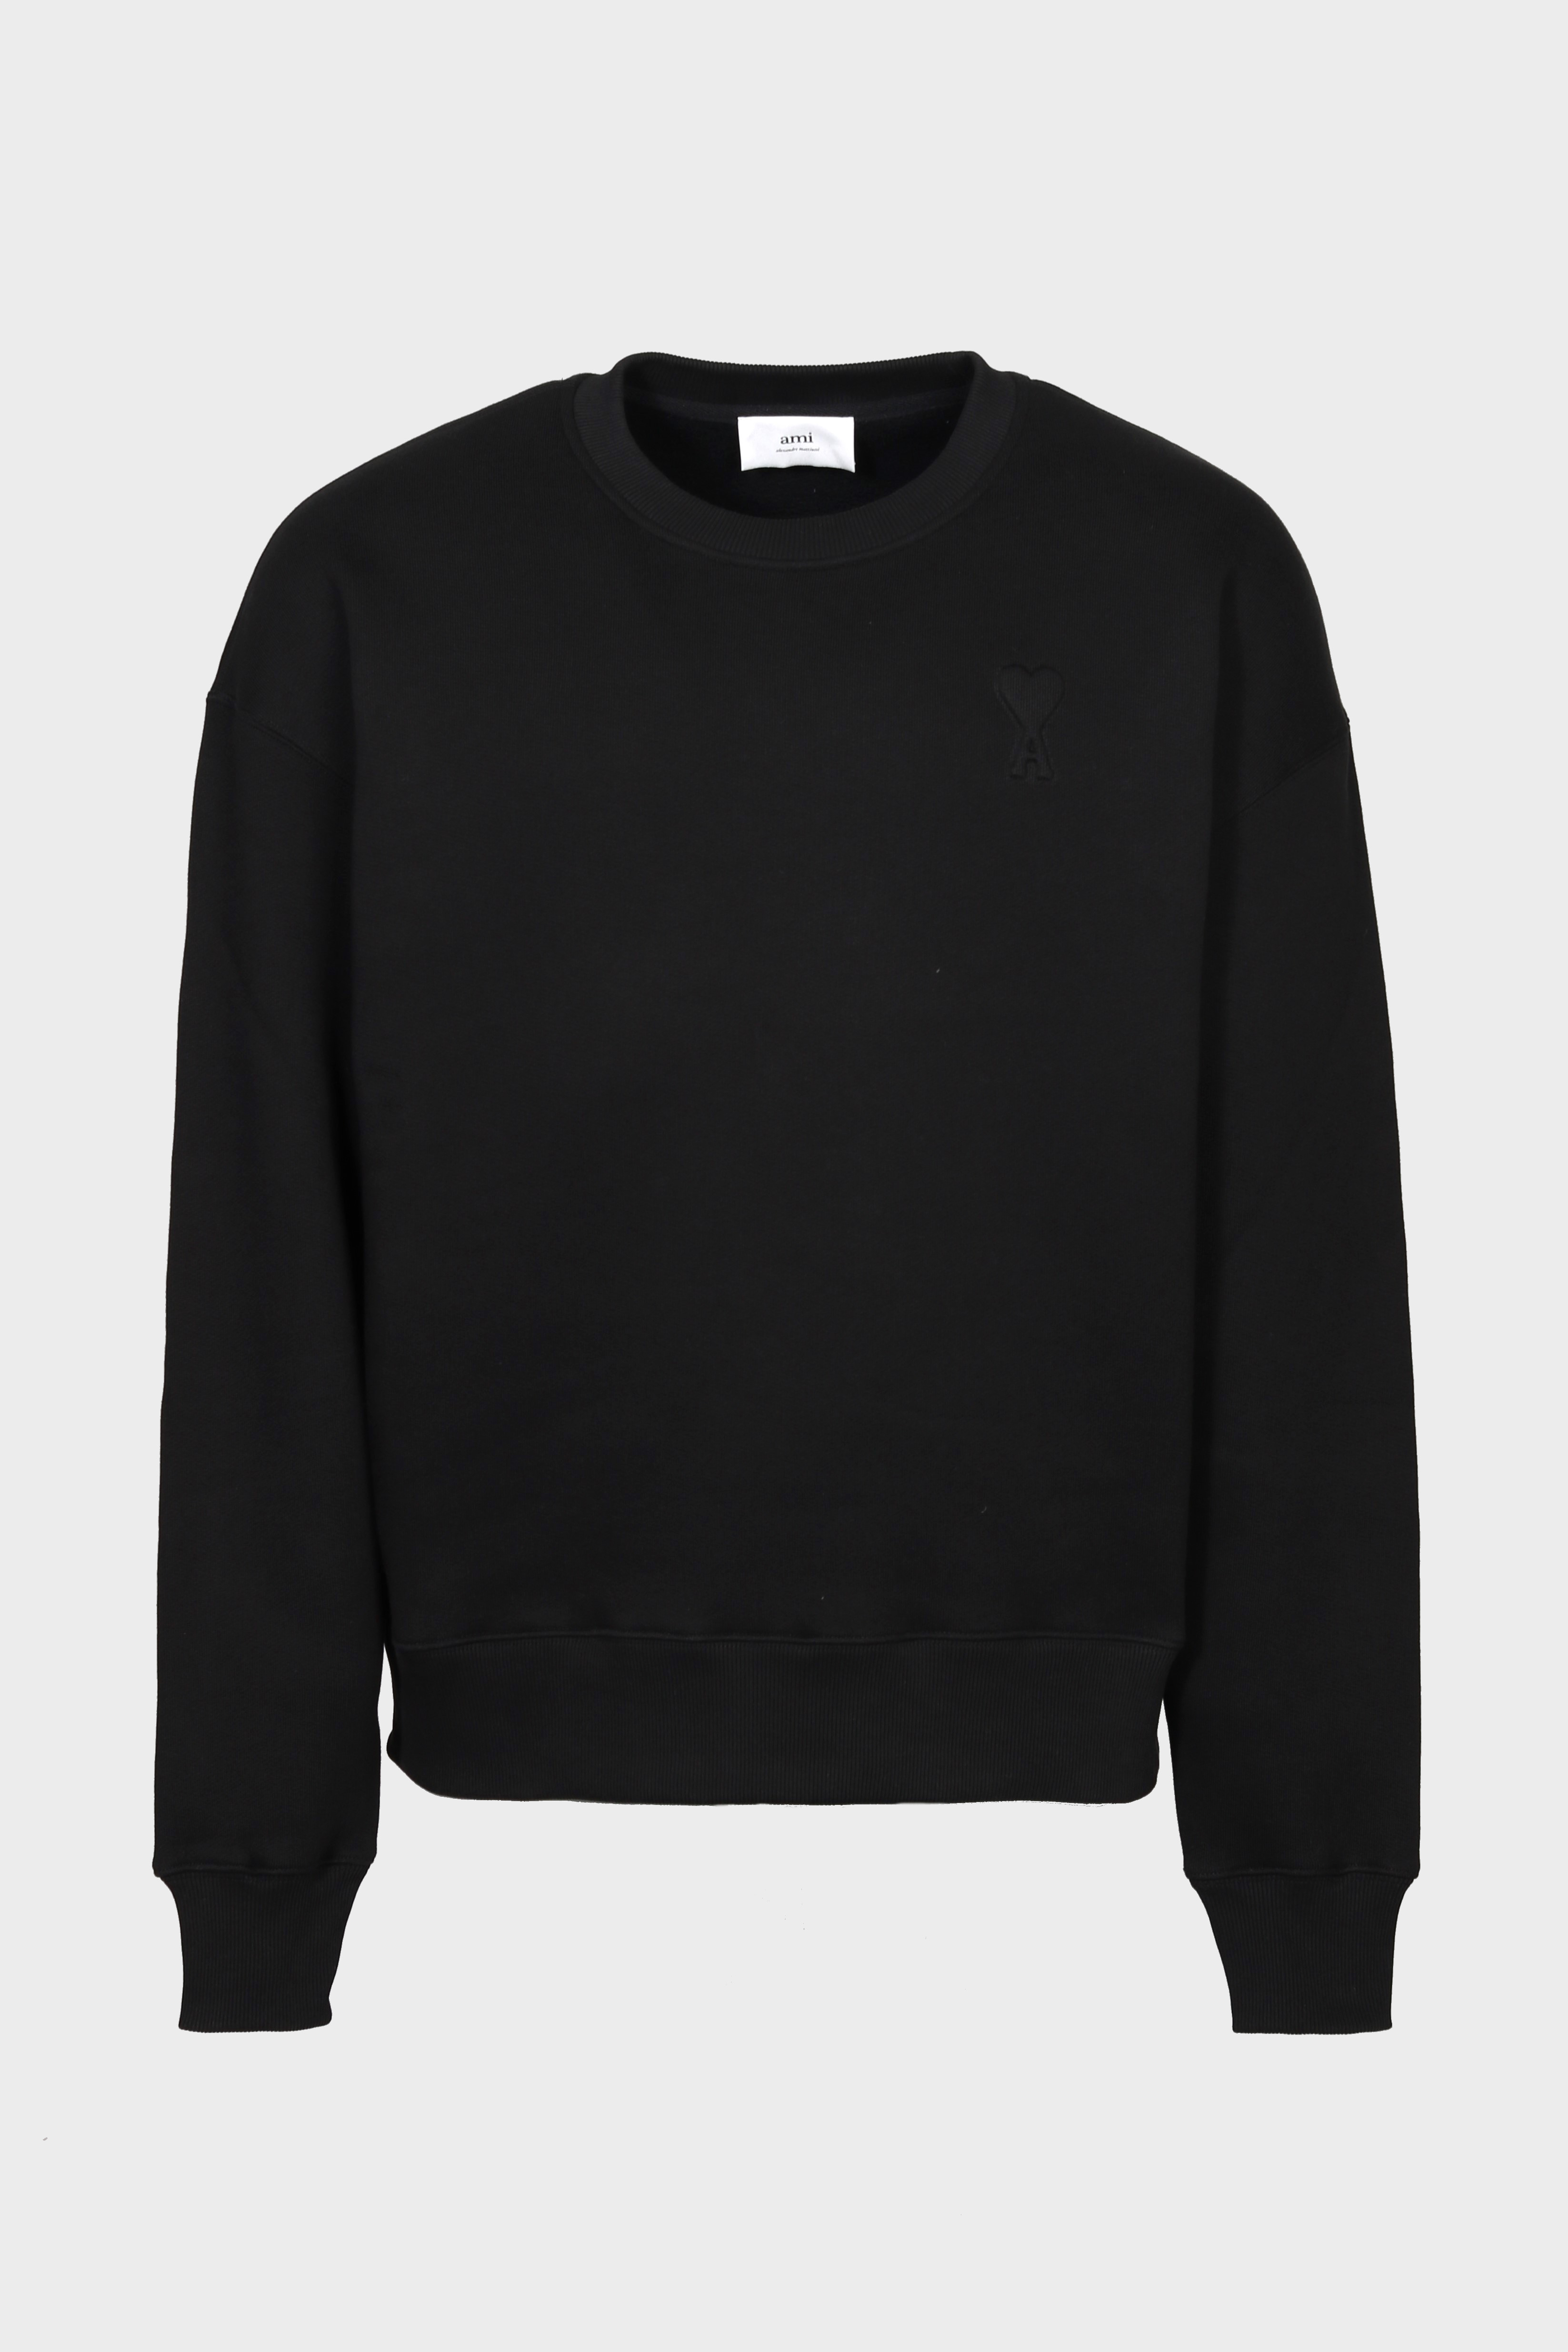 AMI PARIS de Coeur Embossed Sweatshirt in Black S